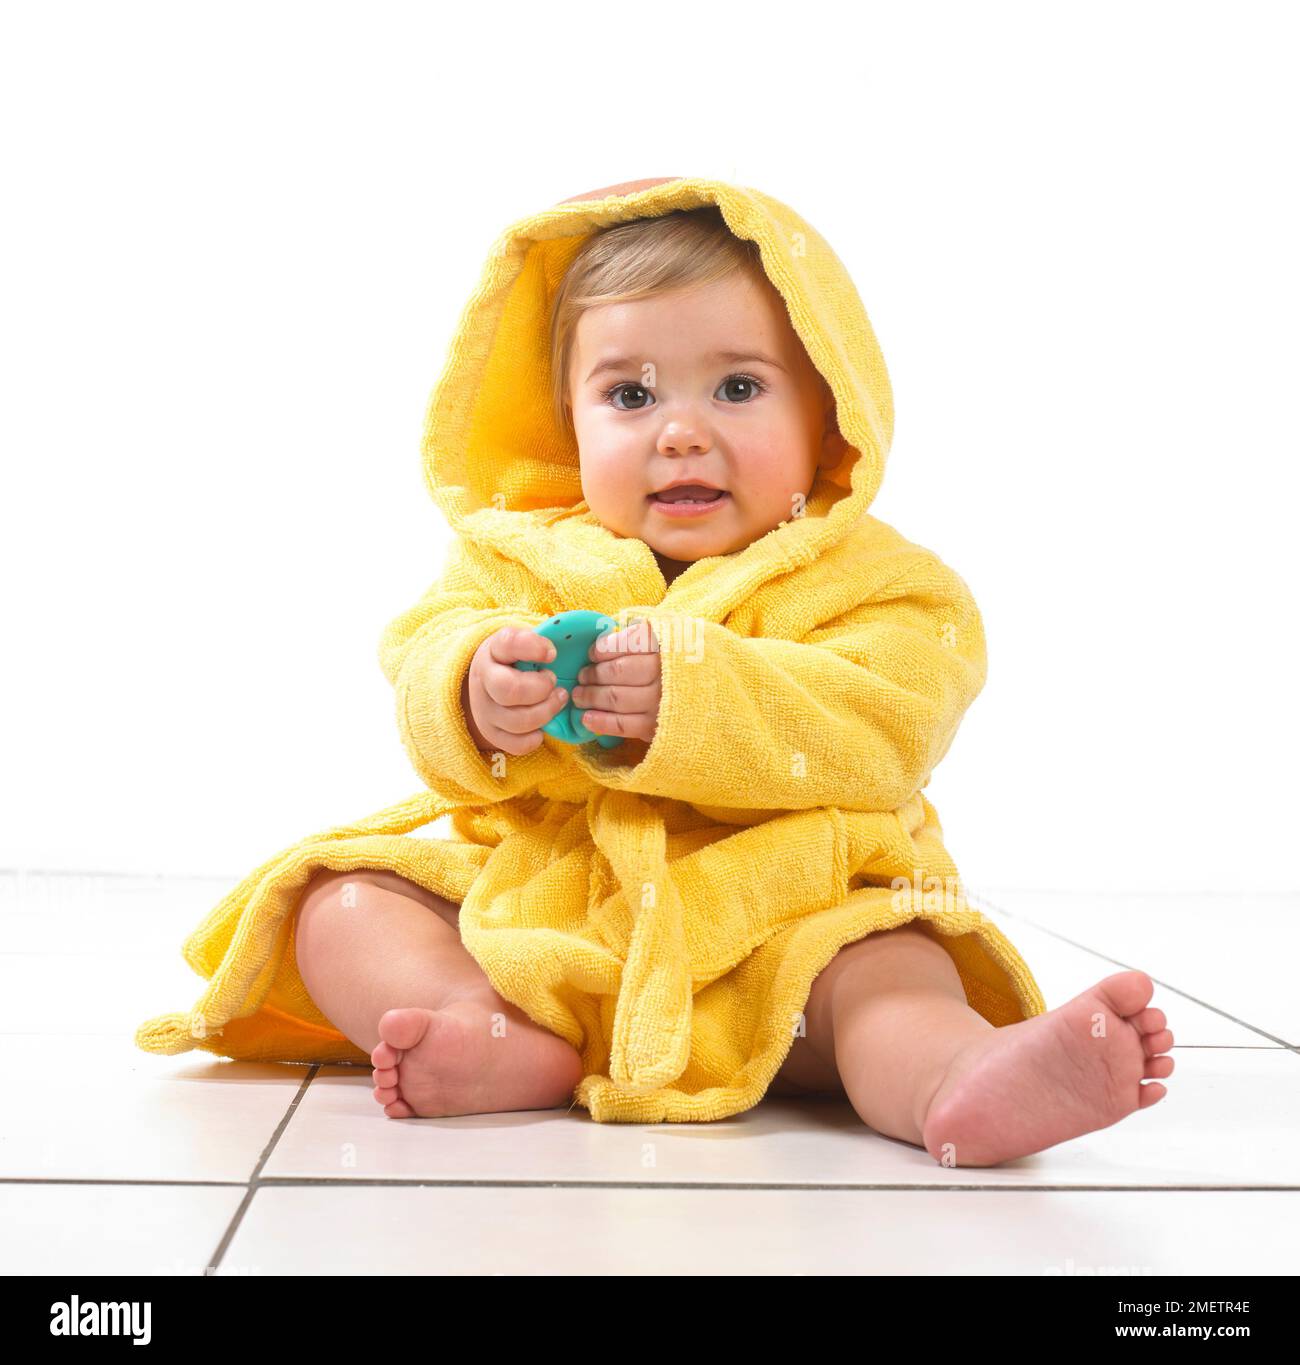 Niña sentada con bata amarilla, 12 meses Foto de stock